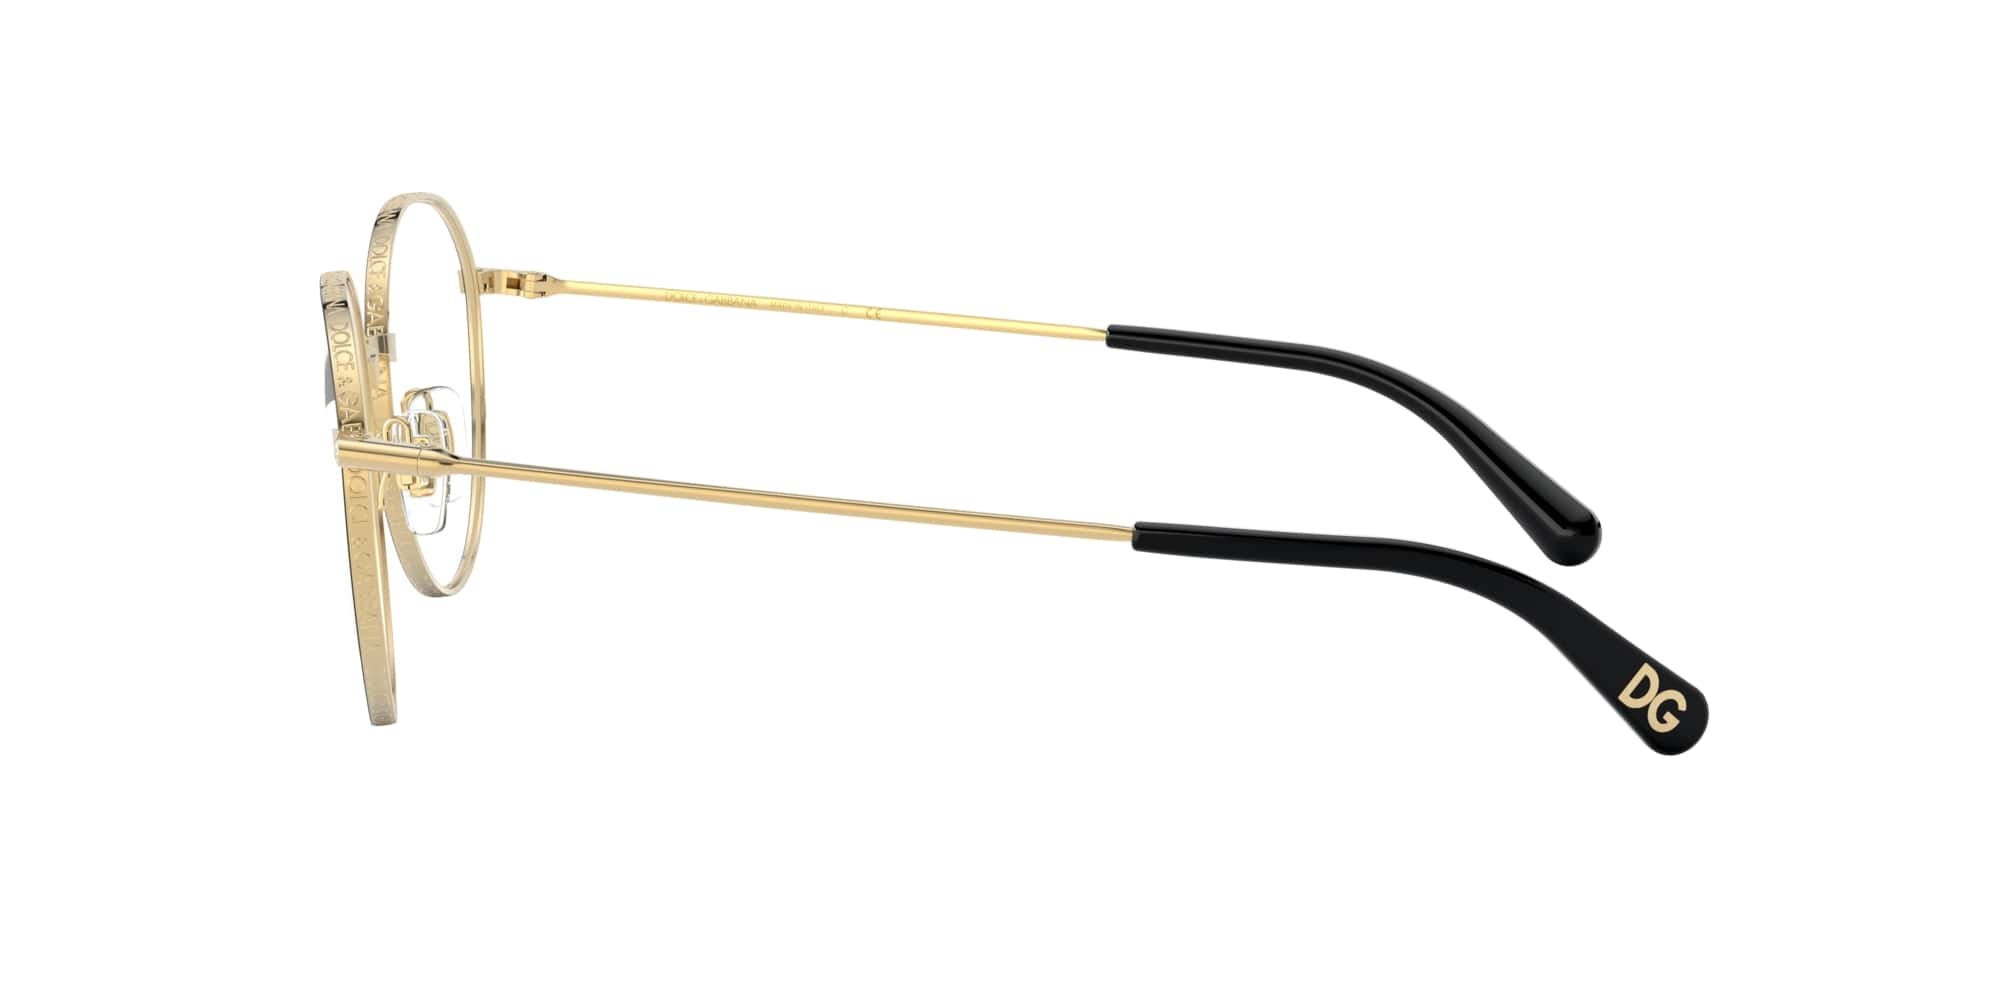 Das Bild zeigt die Korrektionsbrille DG1322 1334 von der Marke D&G in gold-schwarz.